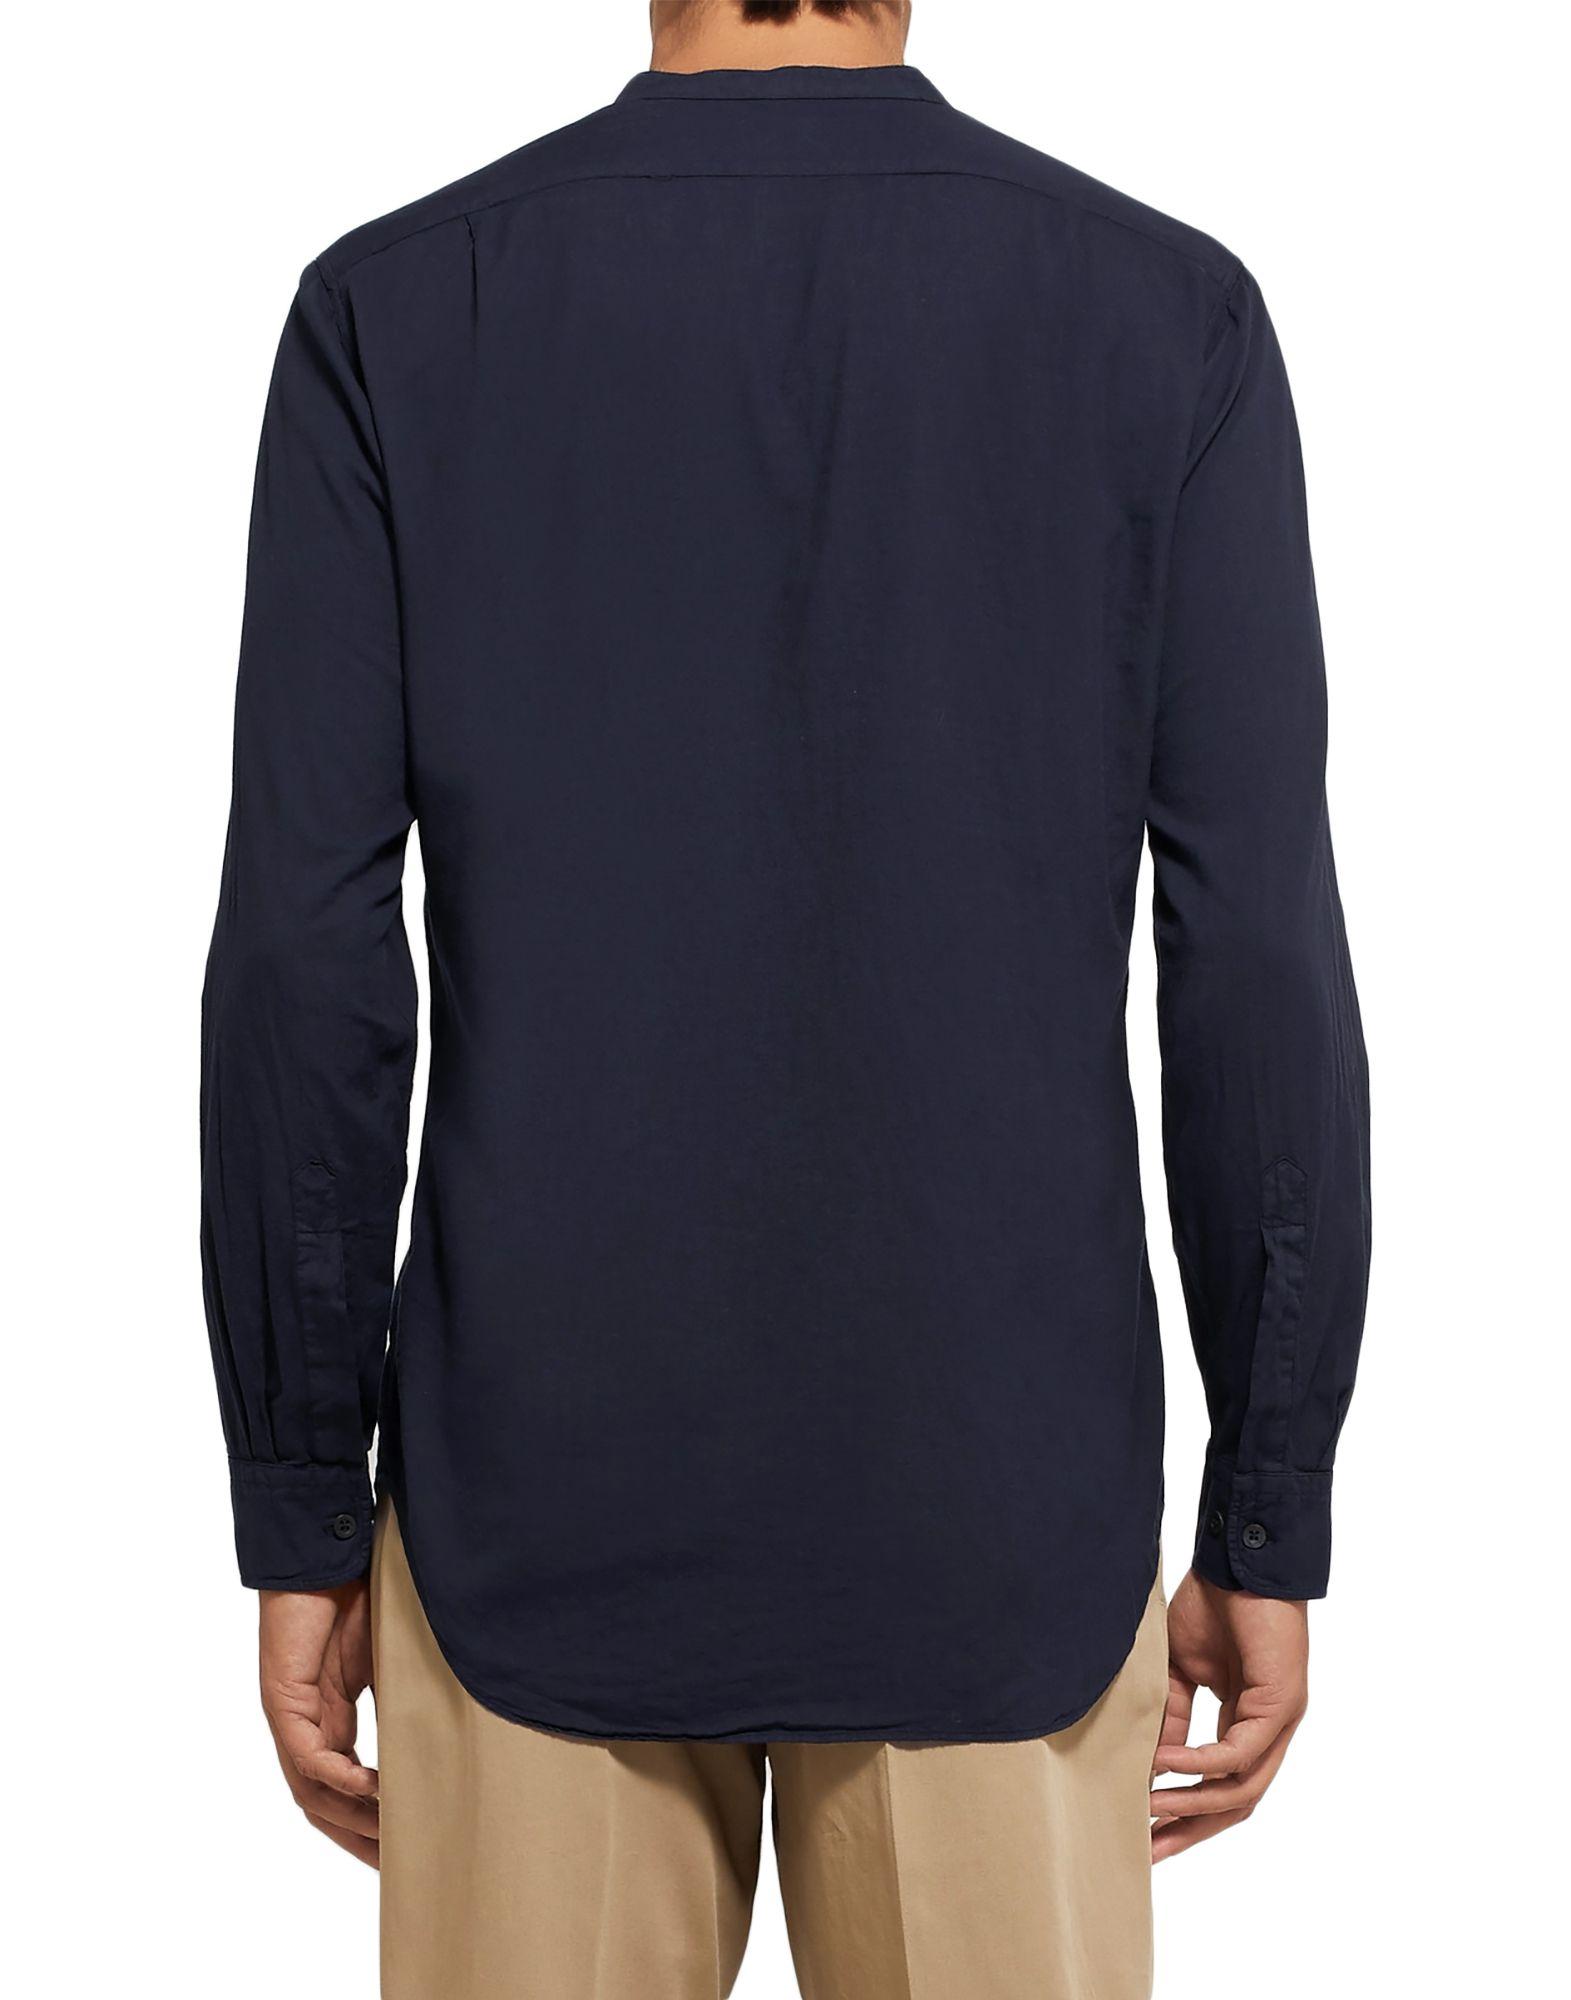 Dries Van Noten Cotton Shirt in Dark Blue (Blue) for Men - Lyst